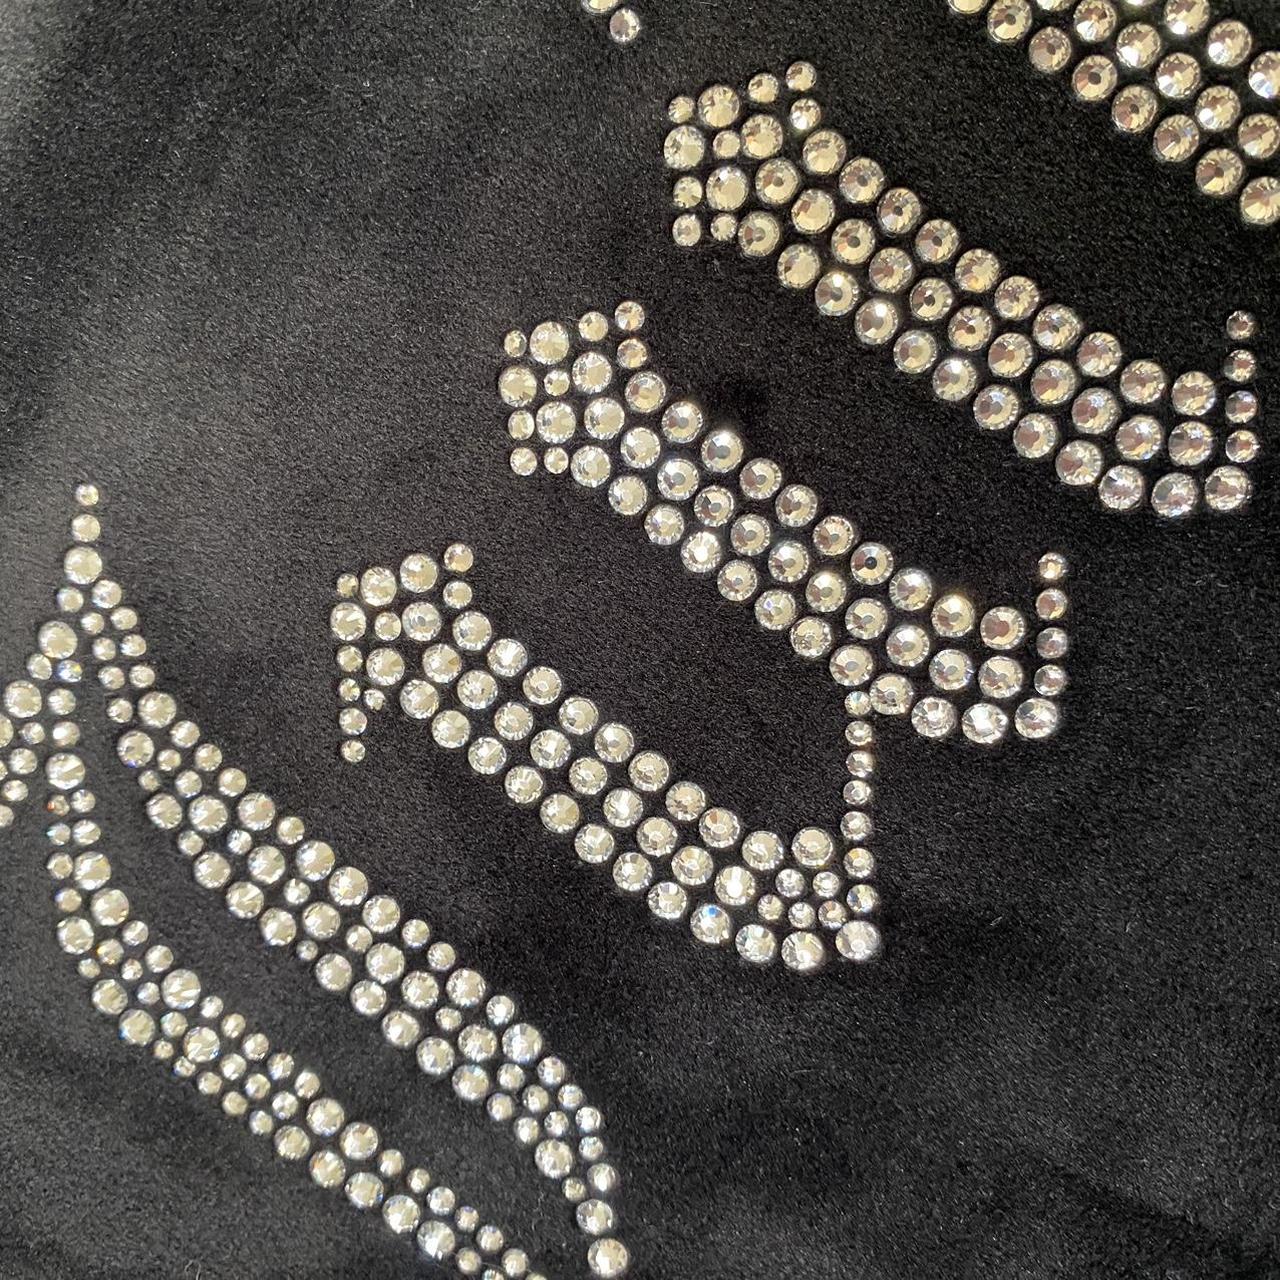 Juicy Couture velvet crop top in black with diamanté... - Depop